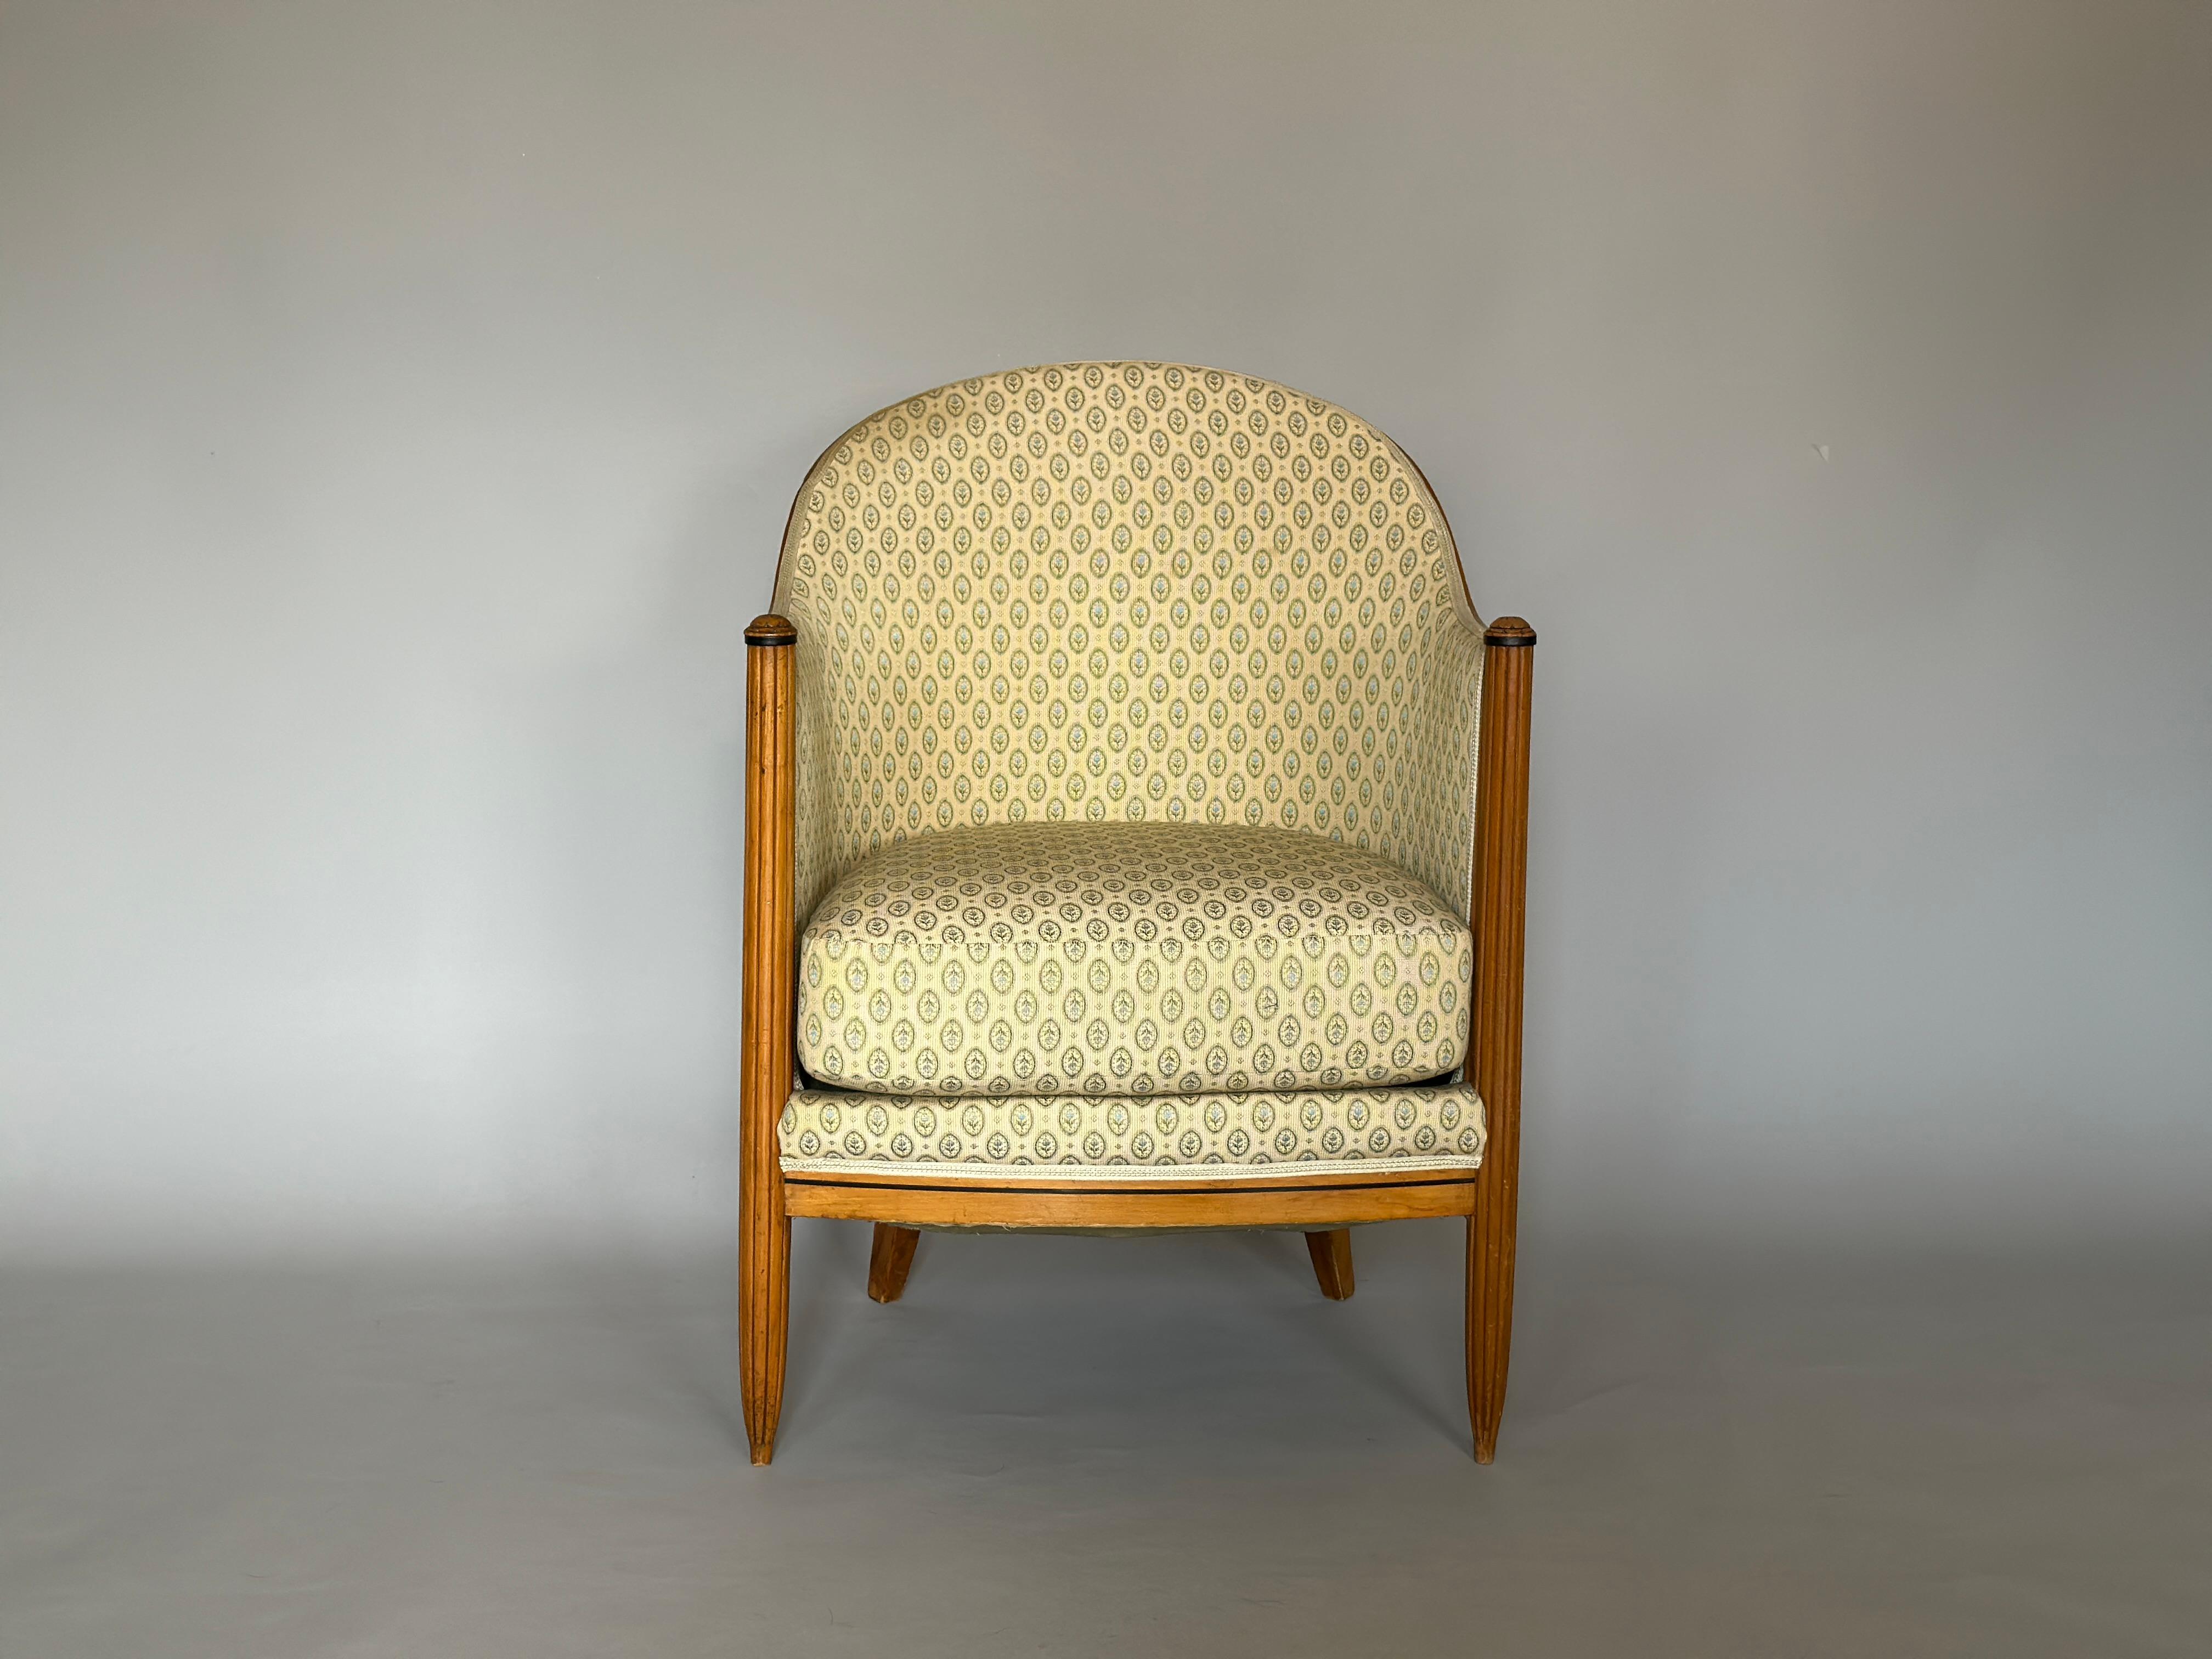 Artdeco armchair made in france 1950s.